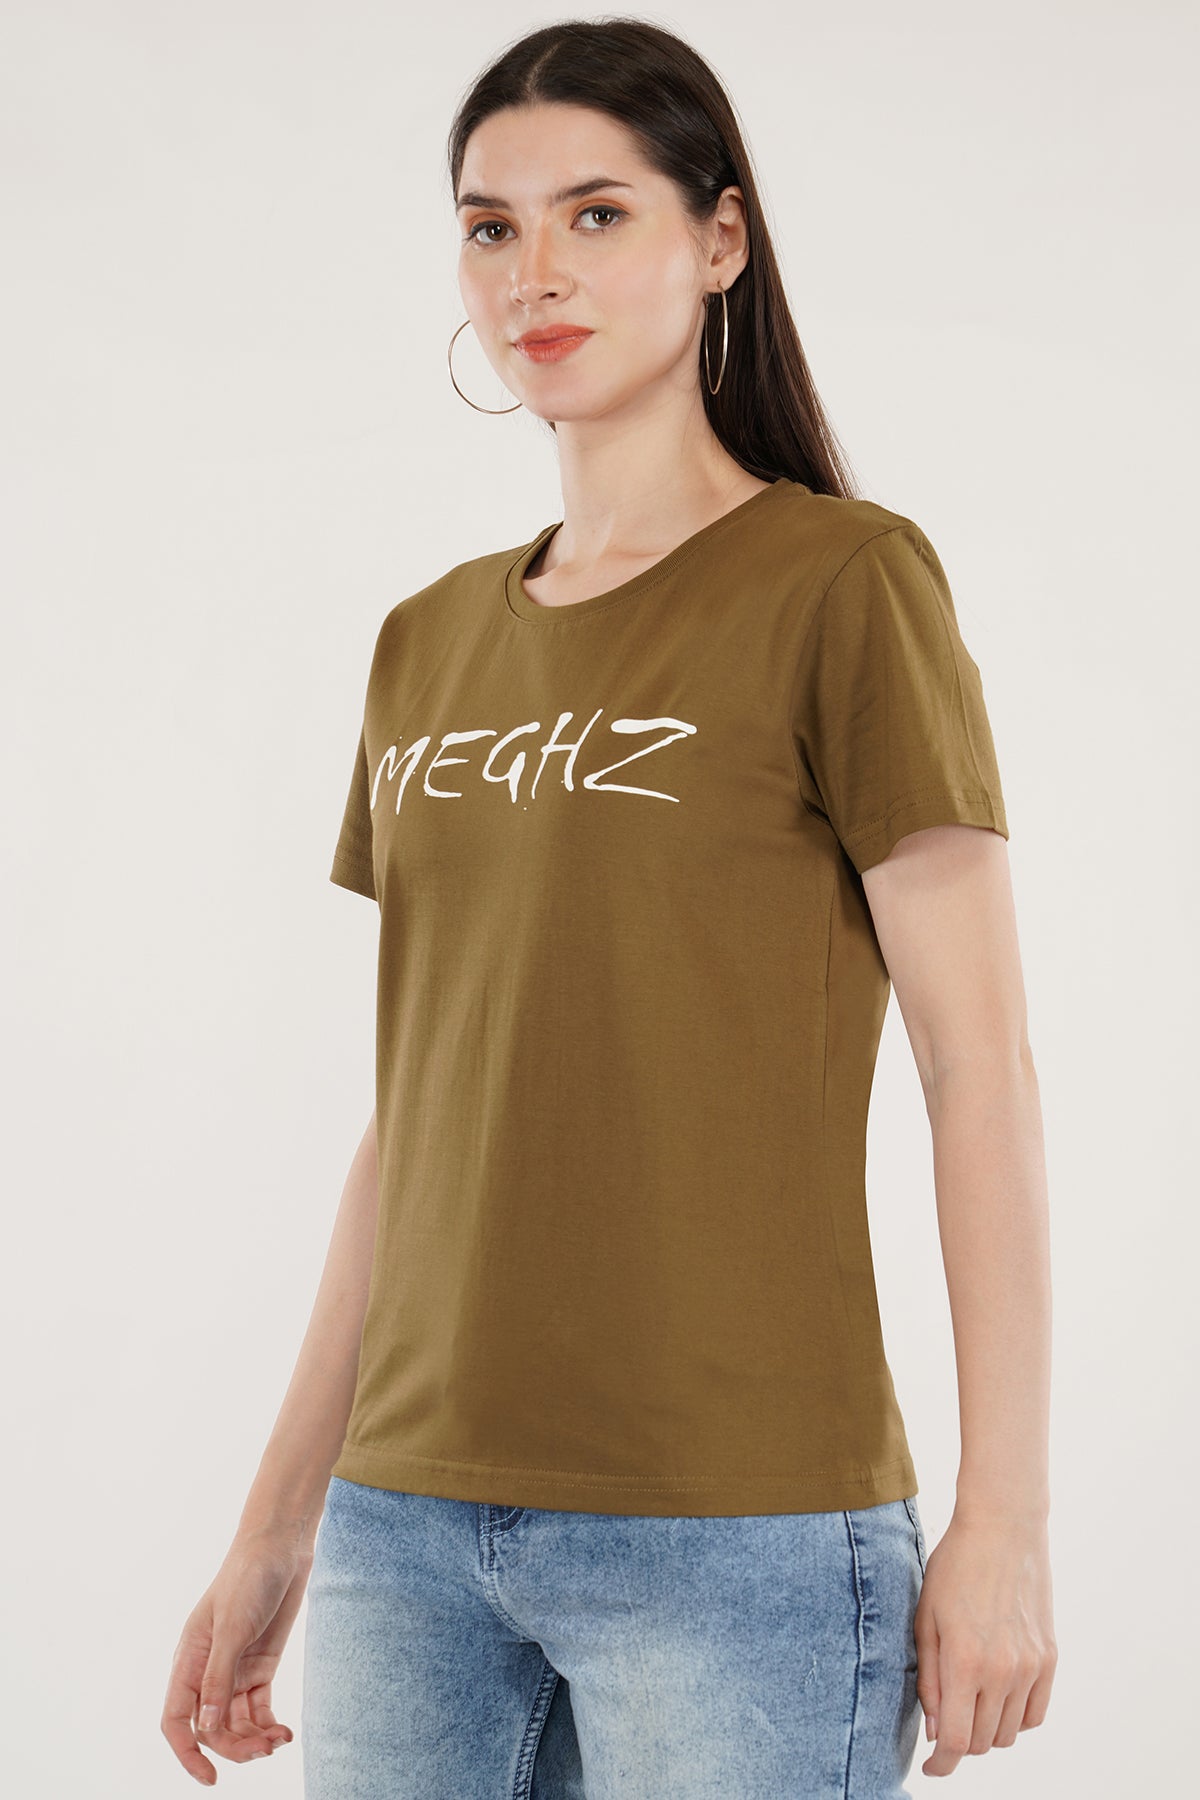 Women Round Neck Olive Green T-Shirt